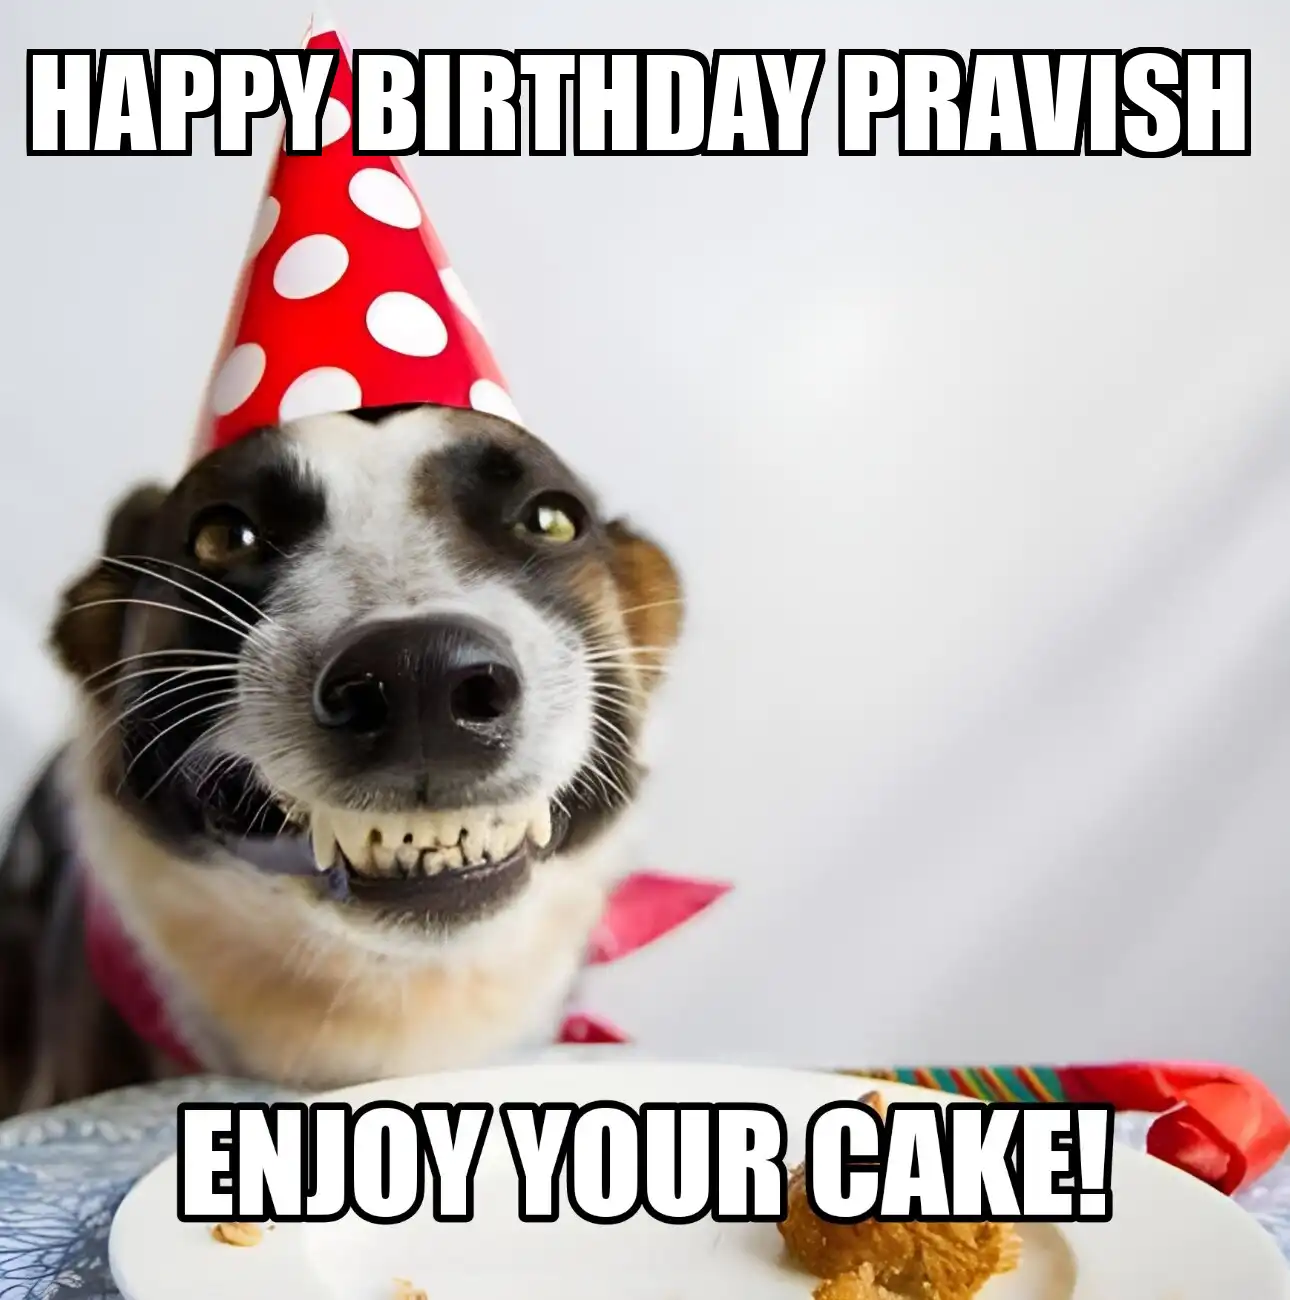 Happy Birthday Pravish Enjoy Your Cake Dog Meme